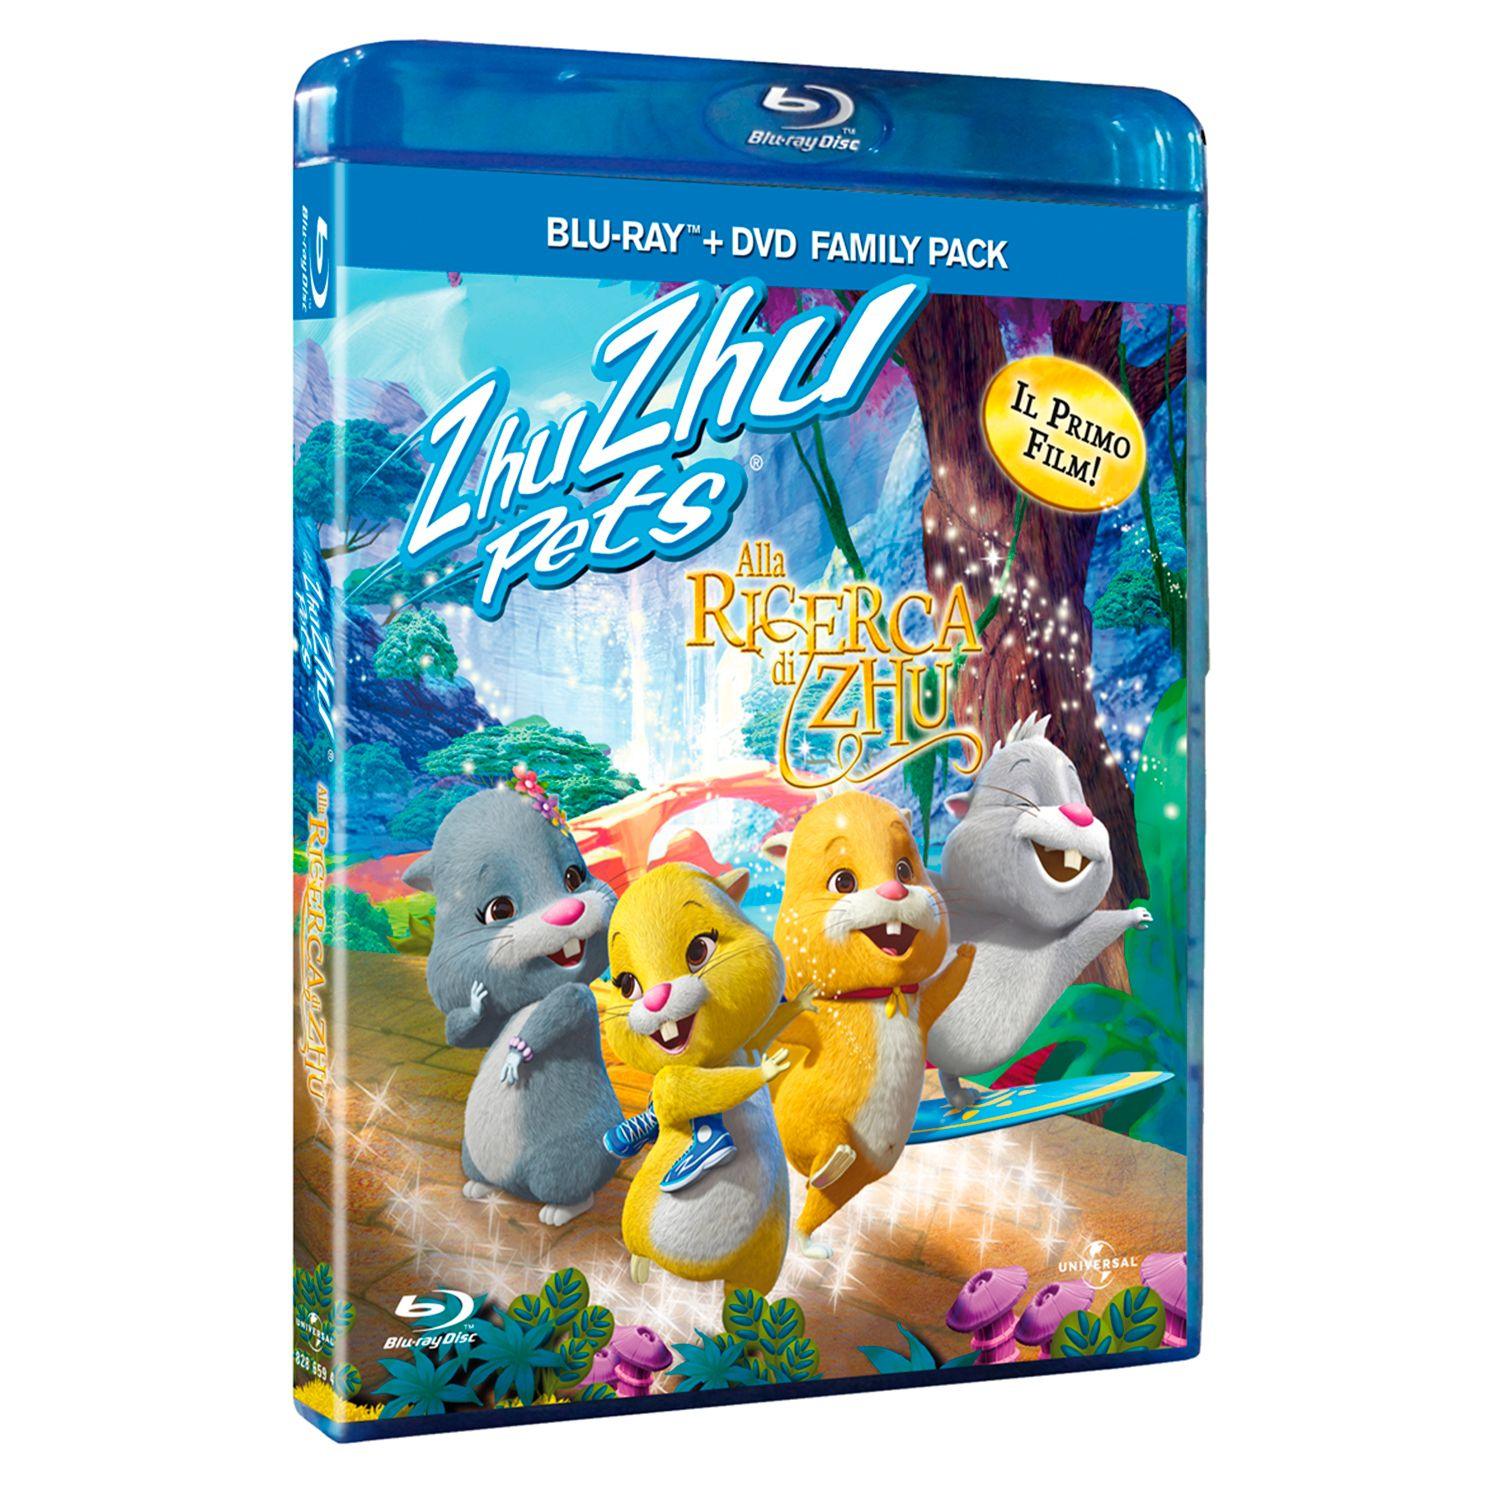 Zhu Zhu Pets: Quest for Zhu (Blu-ray + DVD)